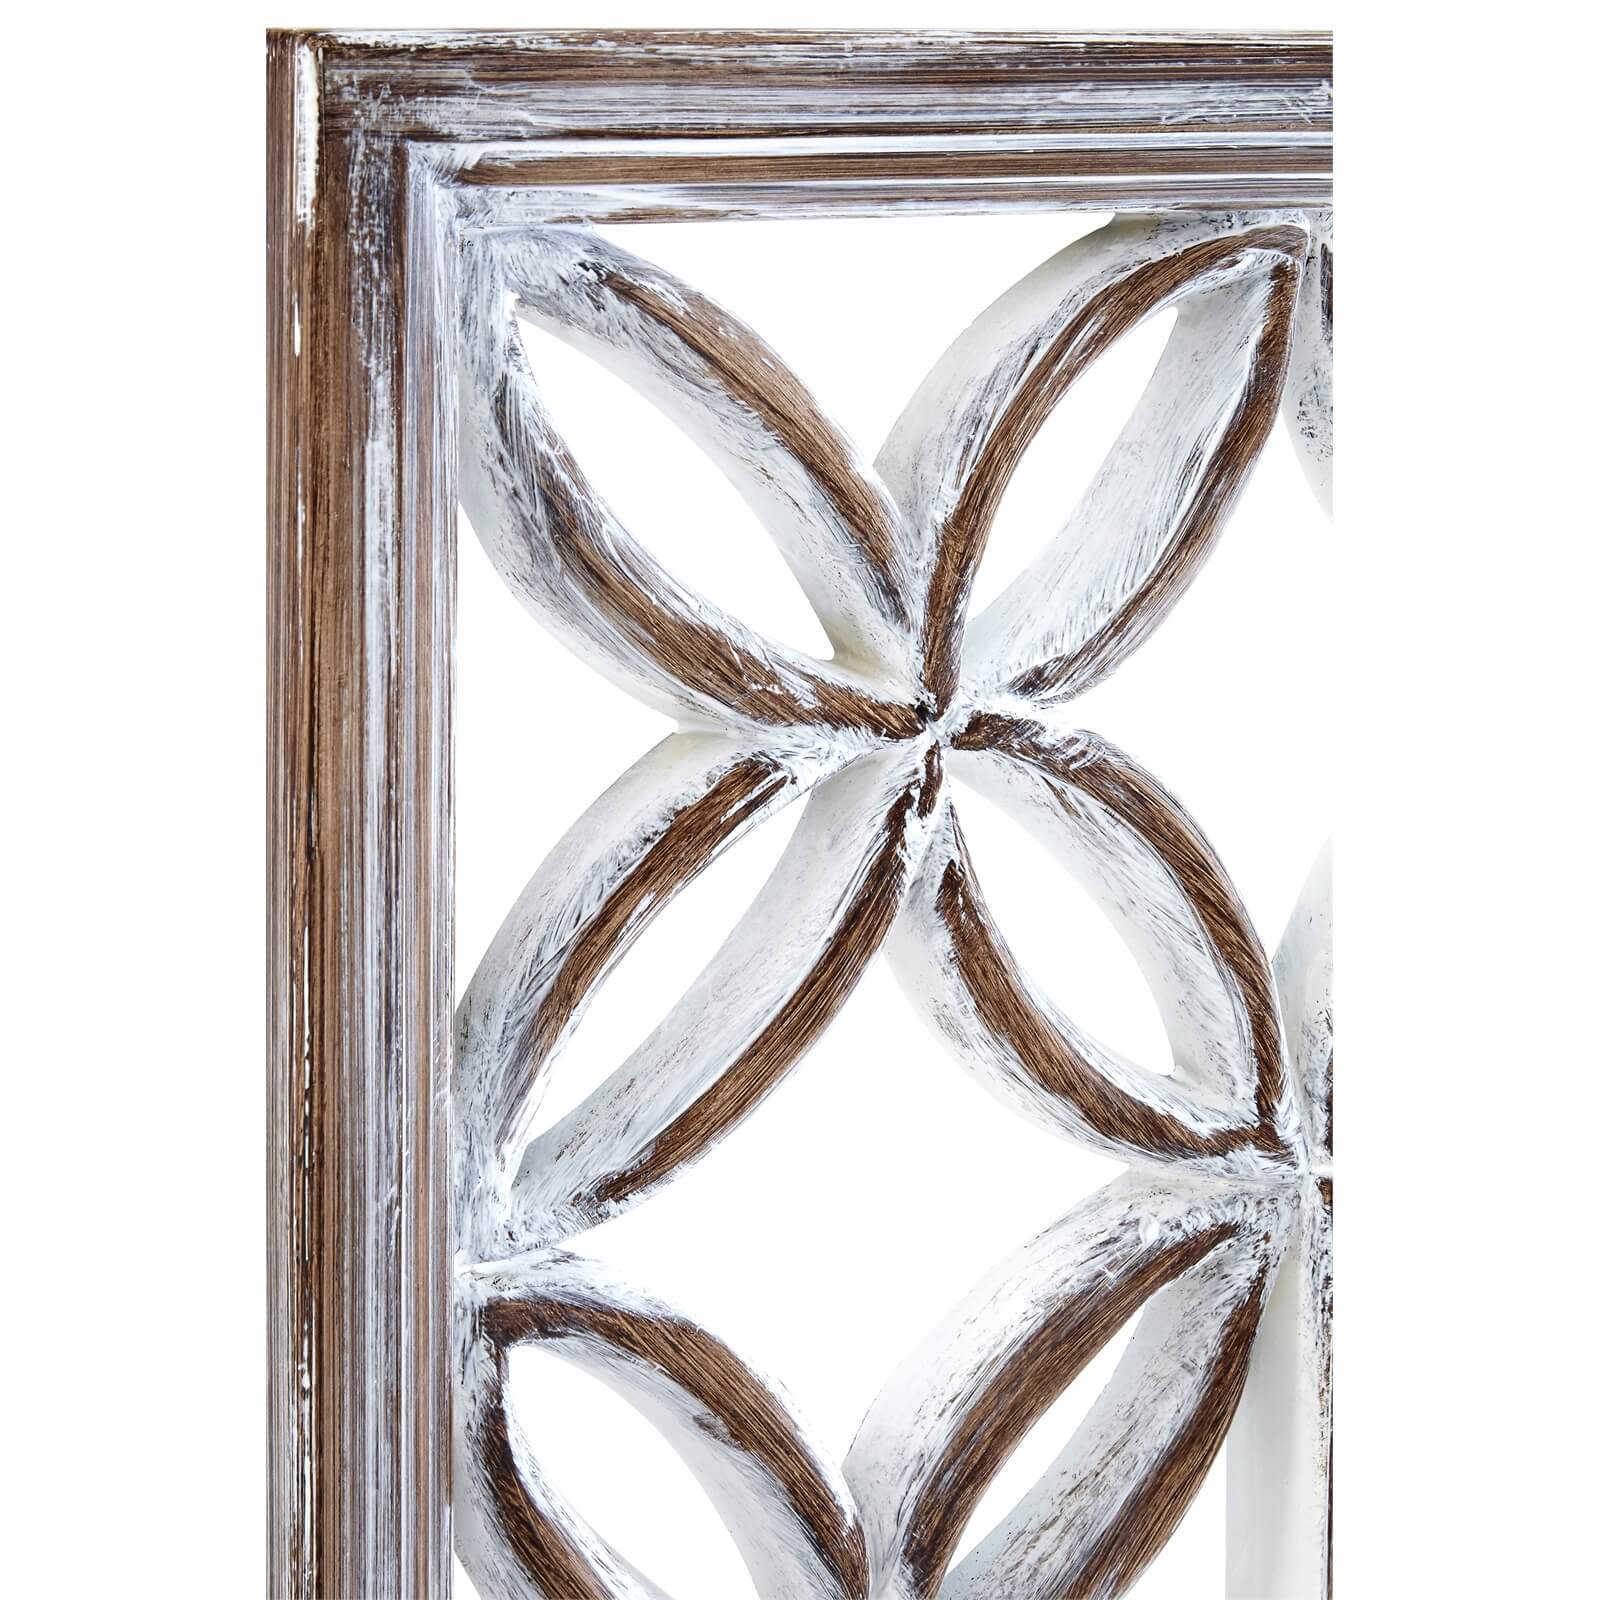 Antique Lattice Frame Wall Mirror - White